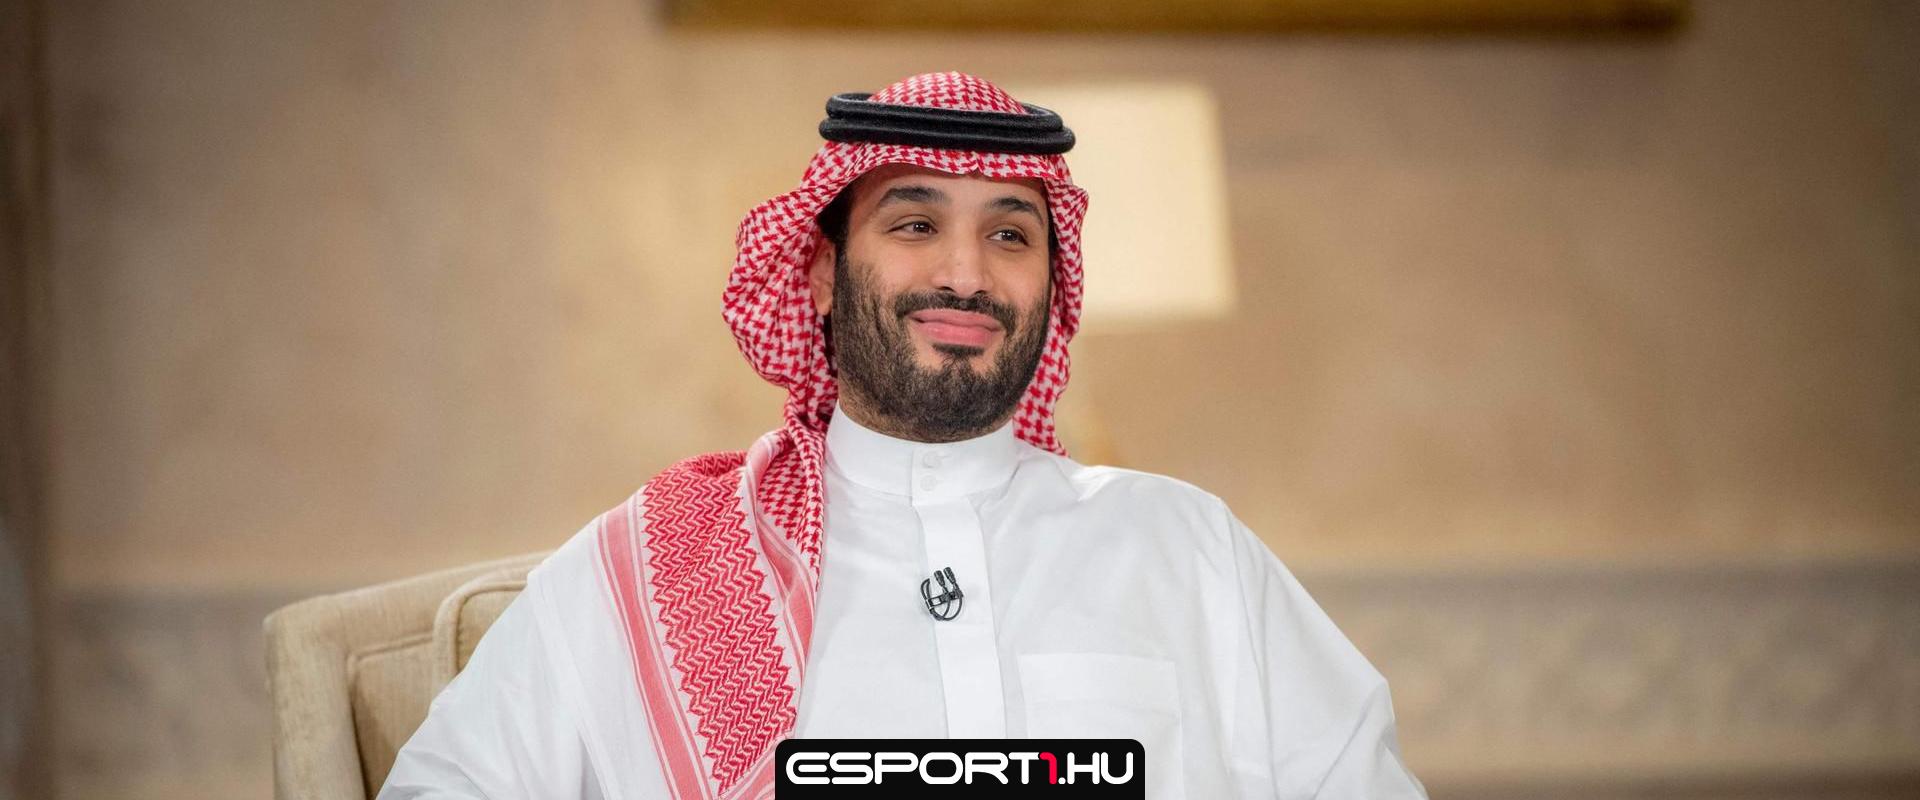 Szaúd-Arábia 13 milliárd dollárt szán egy játékkiadó felvásárlására